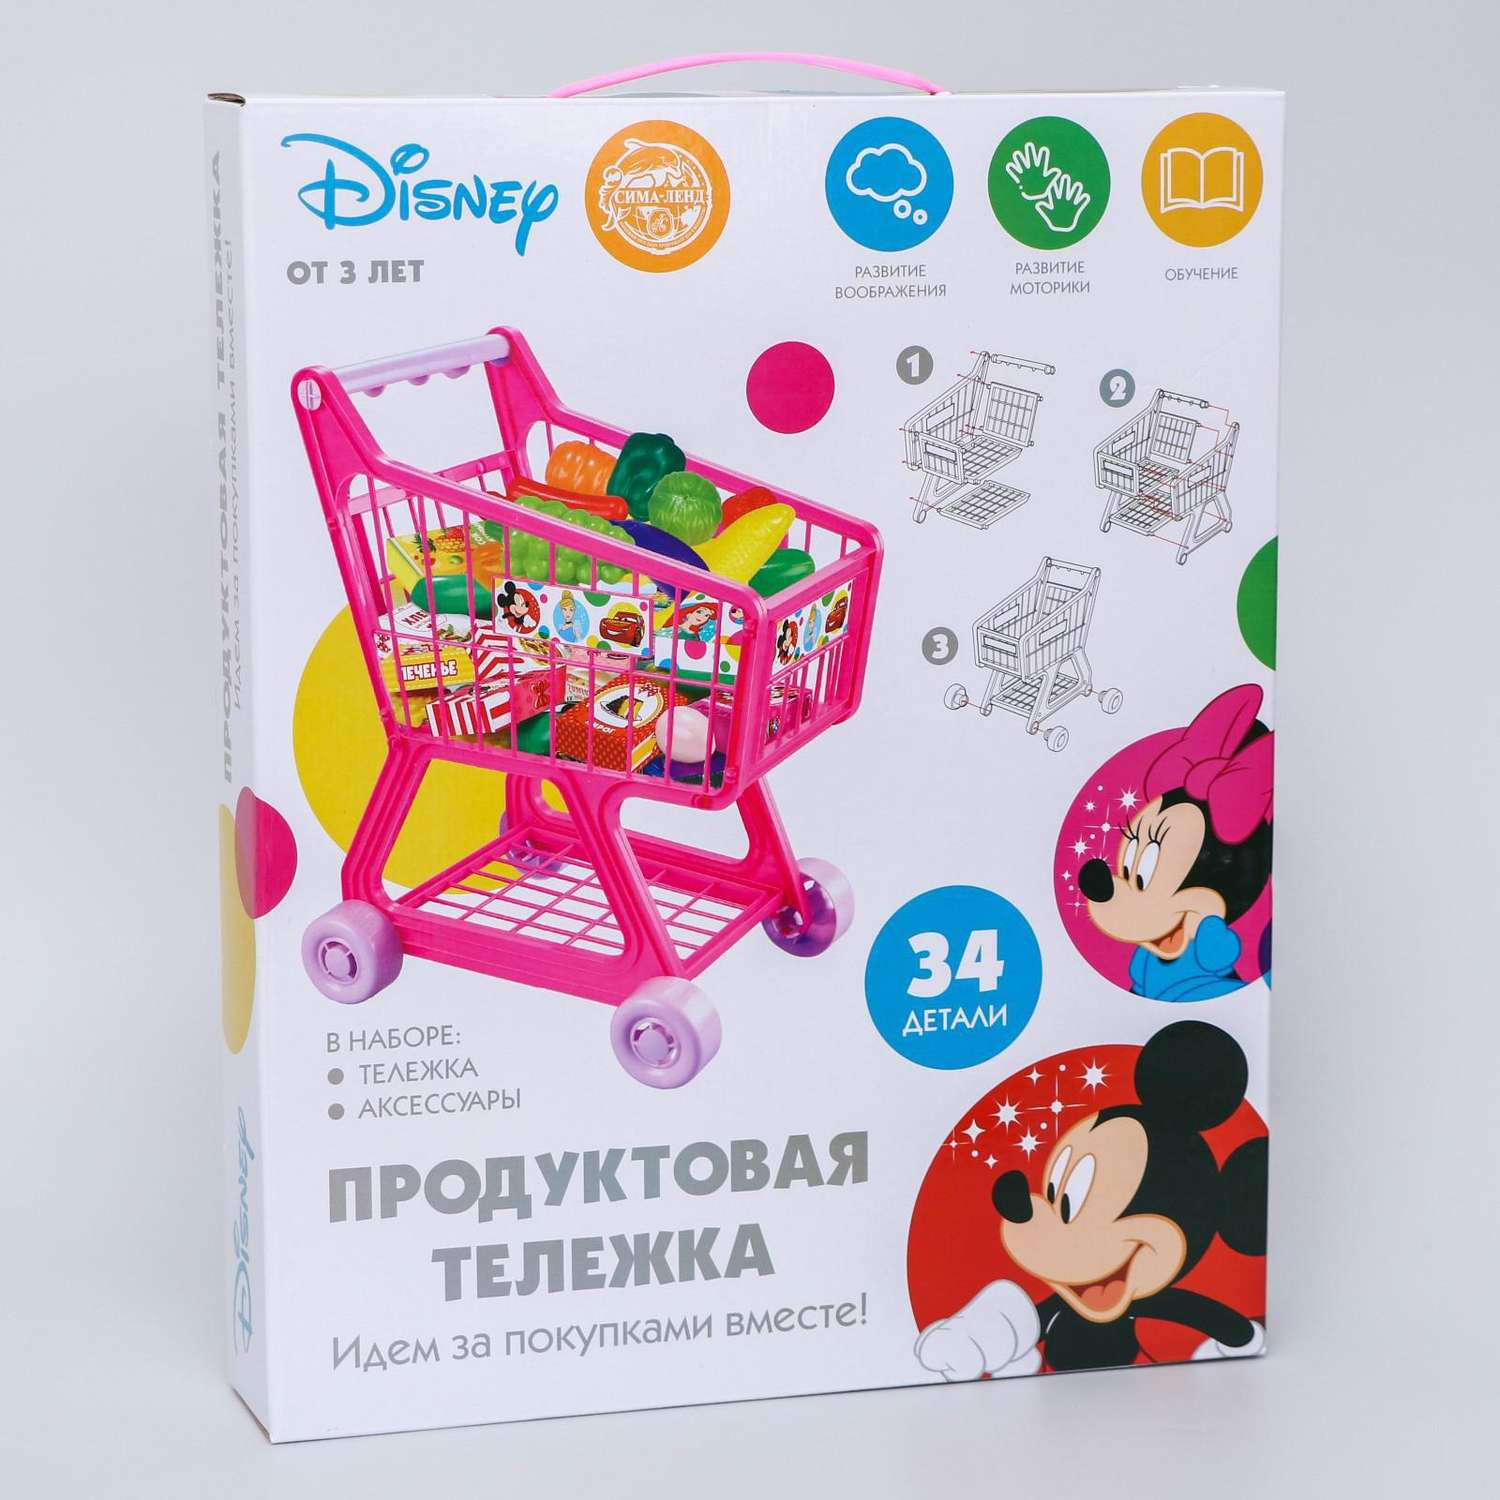 Игровой набор Disney Клуб Микки Мауса Продуктовая тележка розовый - фото 2